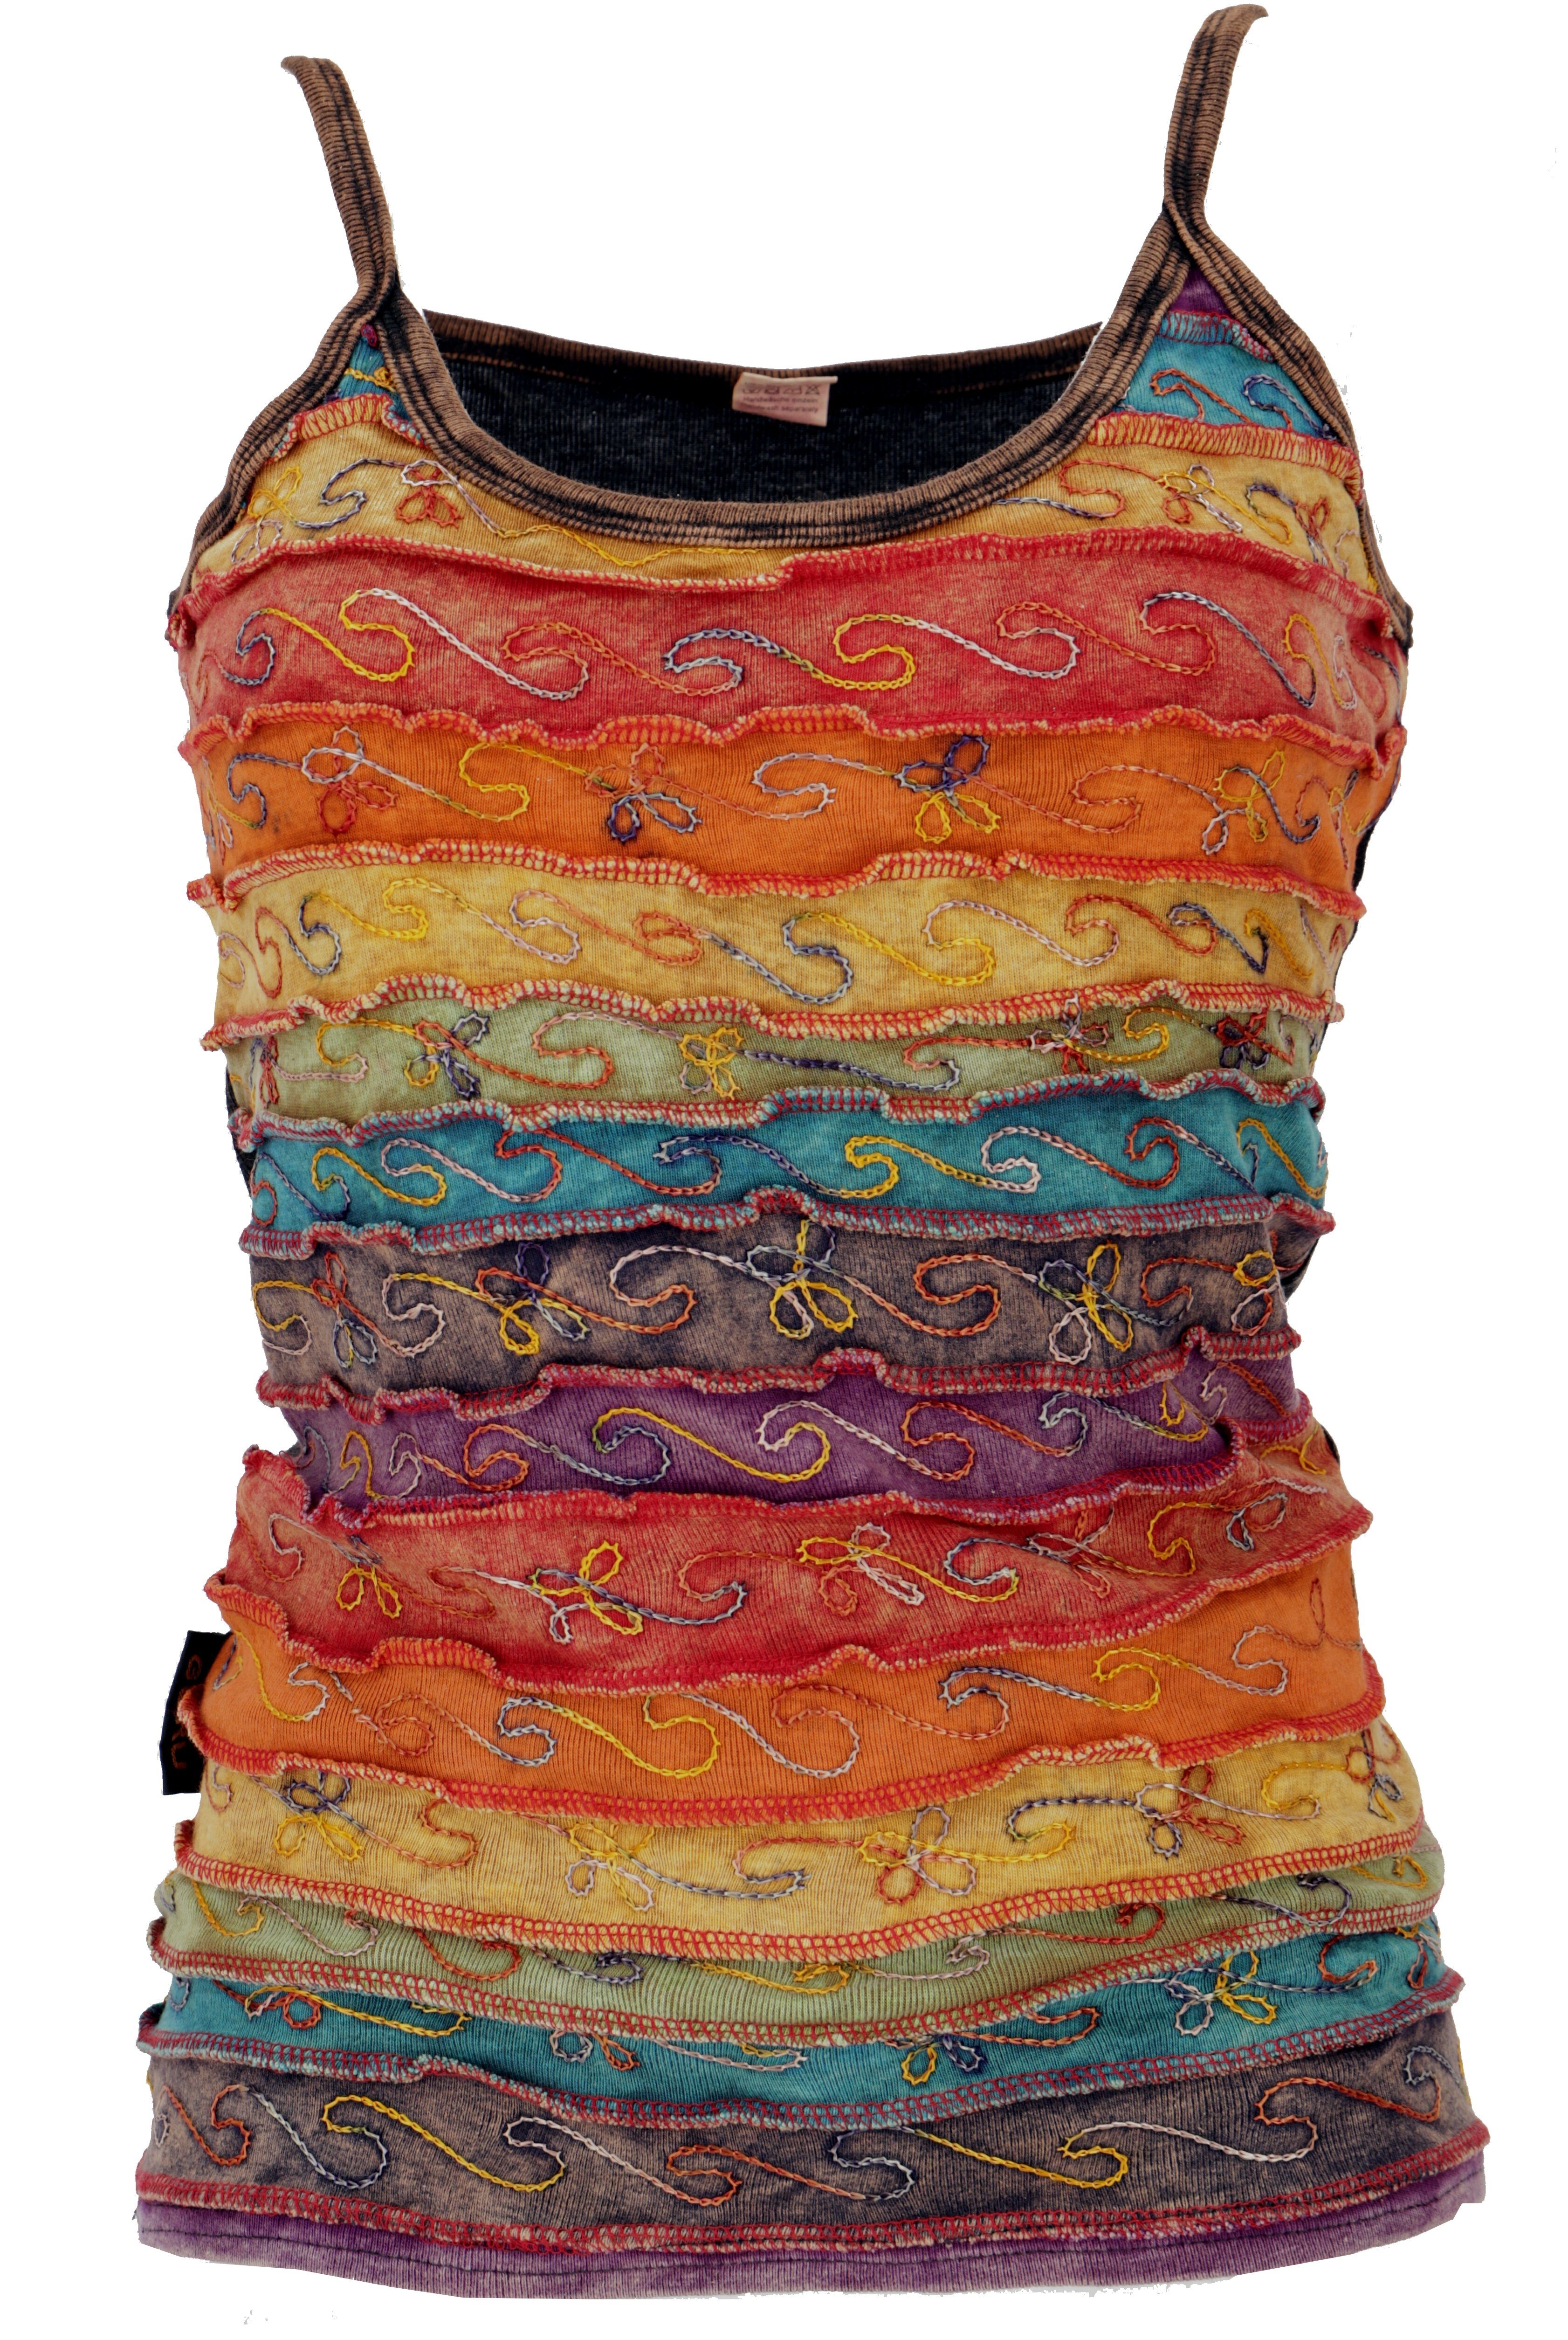 Guru-Shop T-Shirt Stonewash Goa Top - Regenbogen 3 Hippie, alternative Bekleidung, Festival, Ethno Style